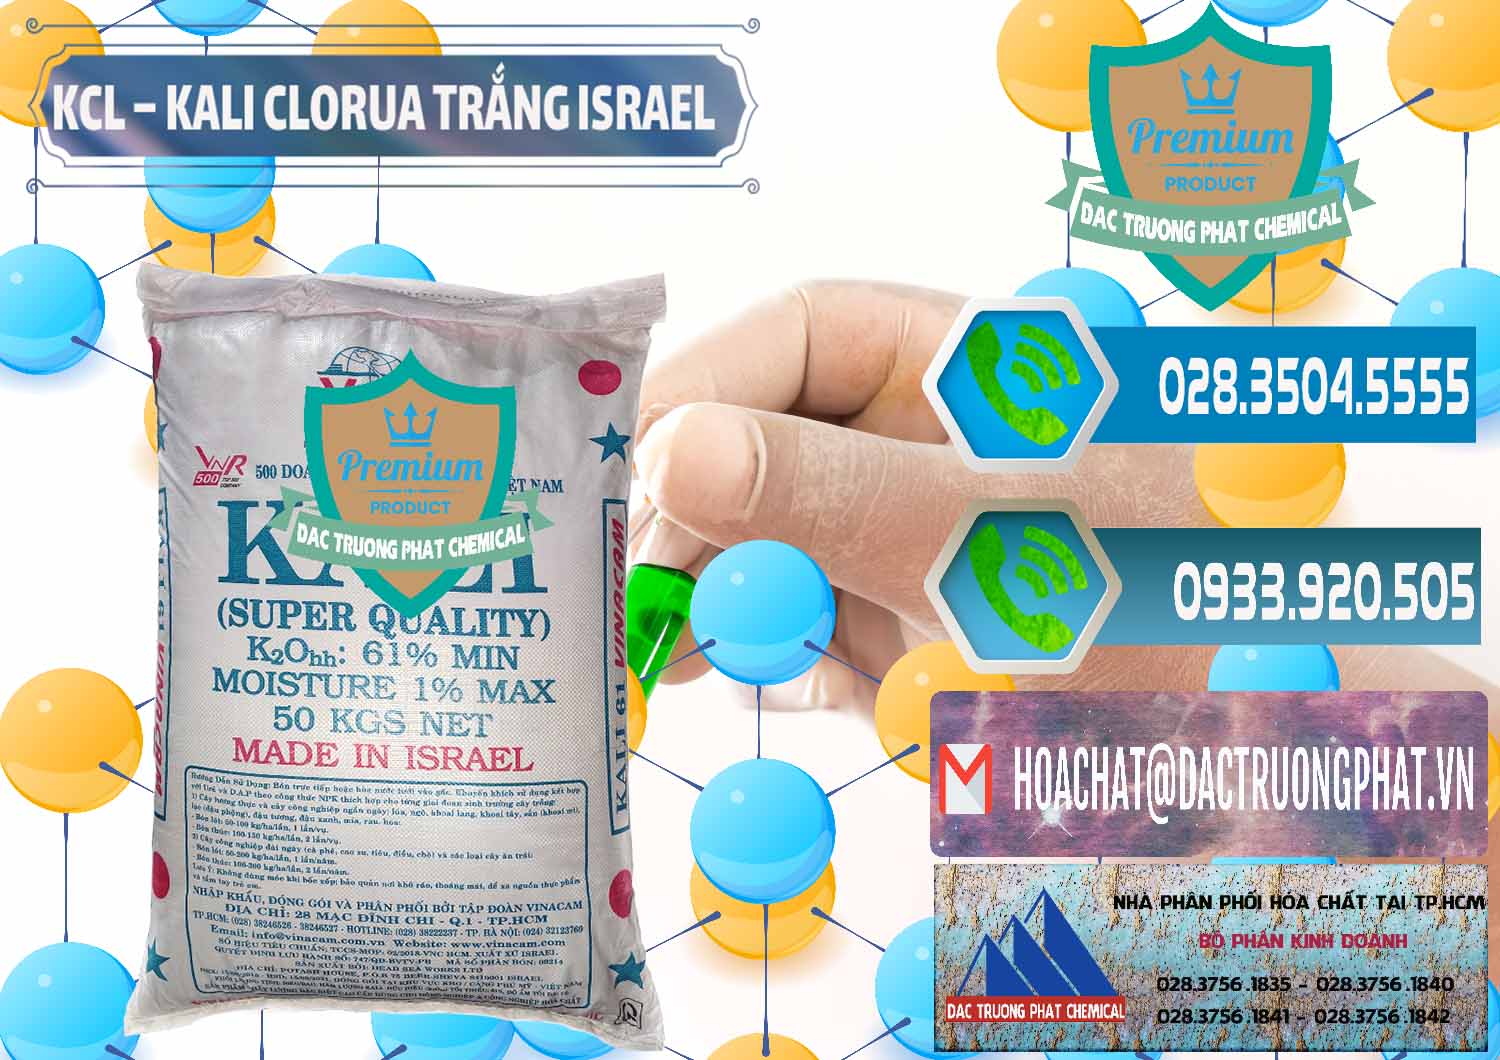 Đơn vị chuyên kinh doanh - bán KCL – Kali Clorua Trắng Israel - 0087 - Cty bán ( phân phối ) hóa chất tại TP.HCM - congtyhoachat.net